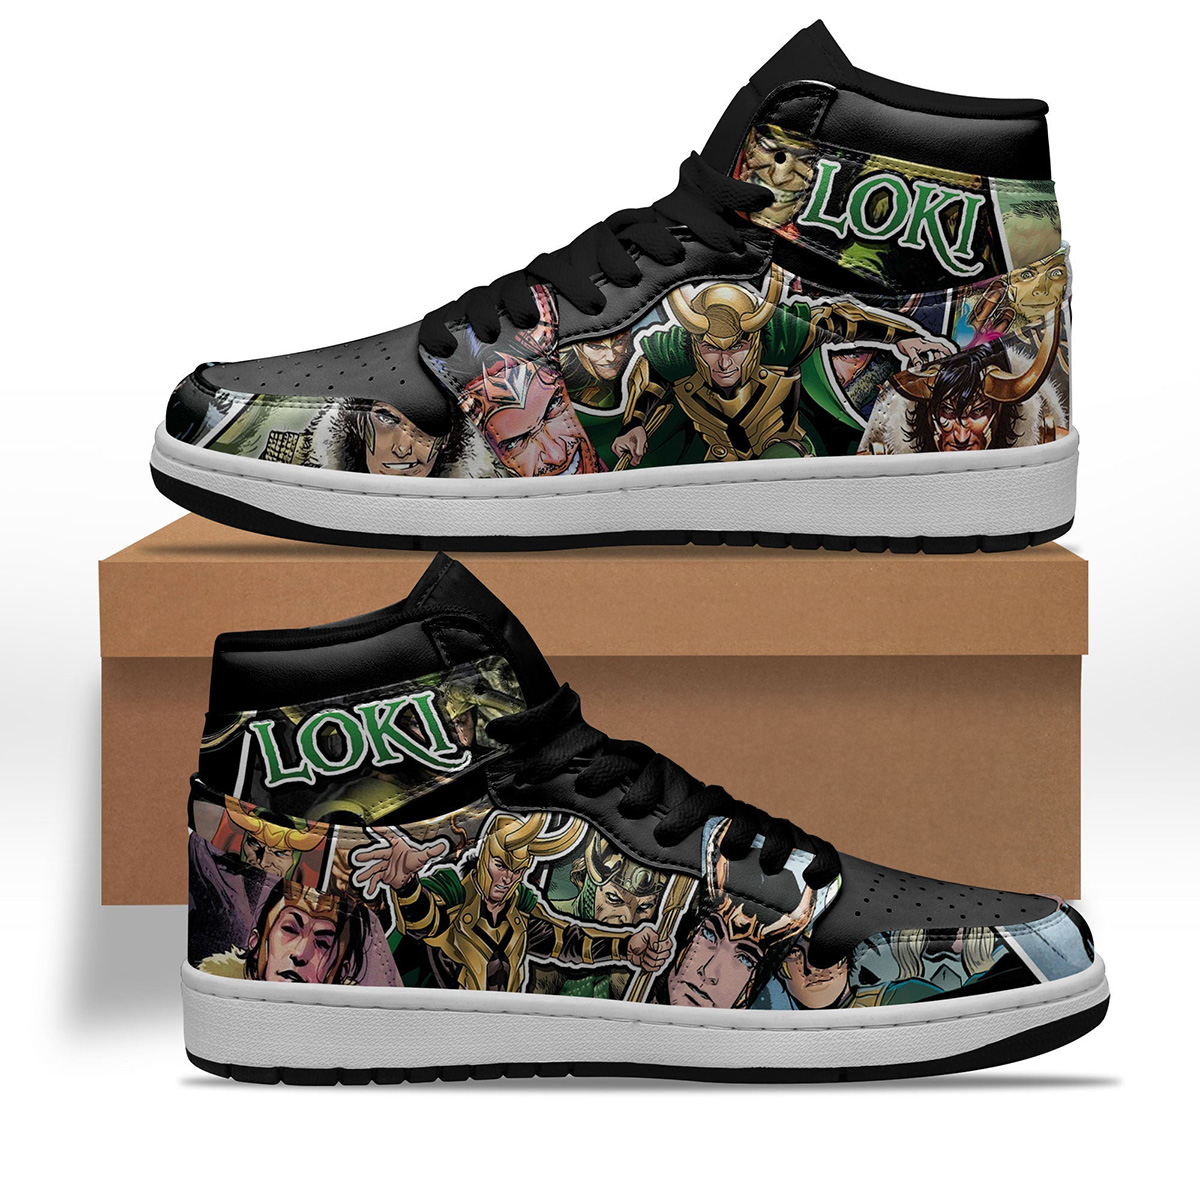 Avenger Loki Shoes Custom